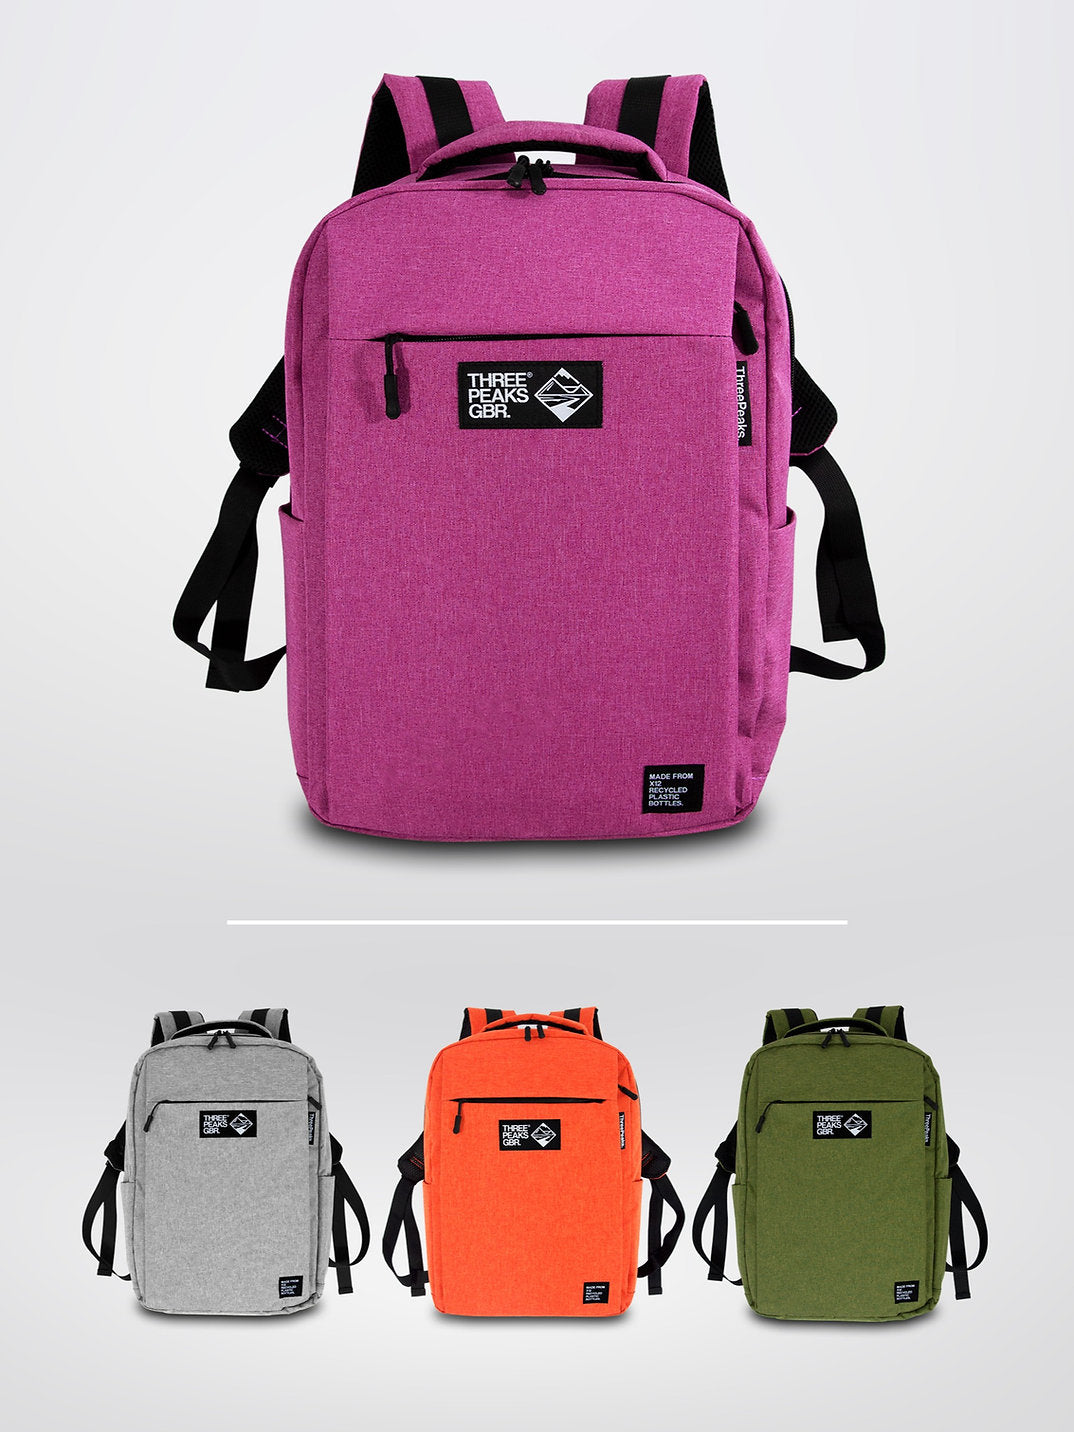 Three Peaks GBR Kaito 20L Backpack - Orange